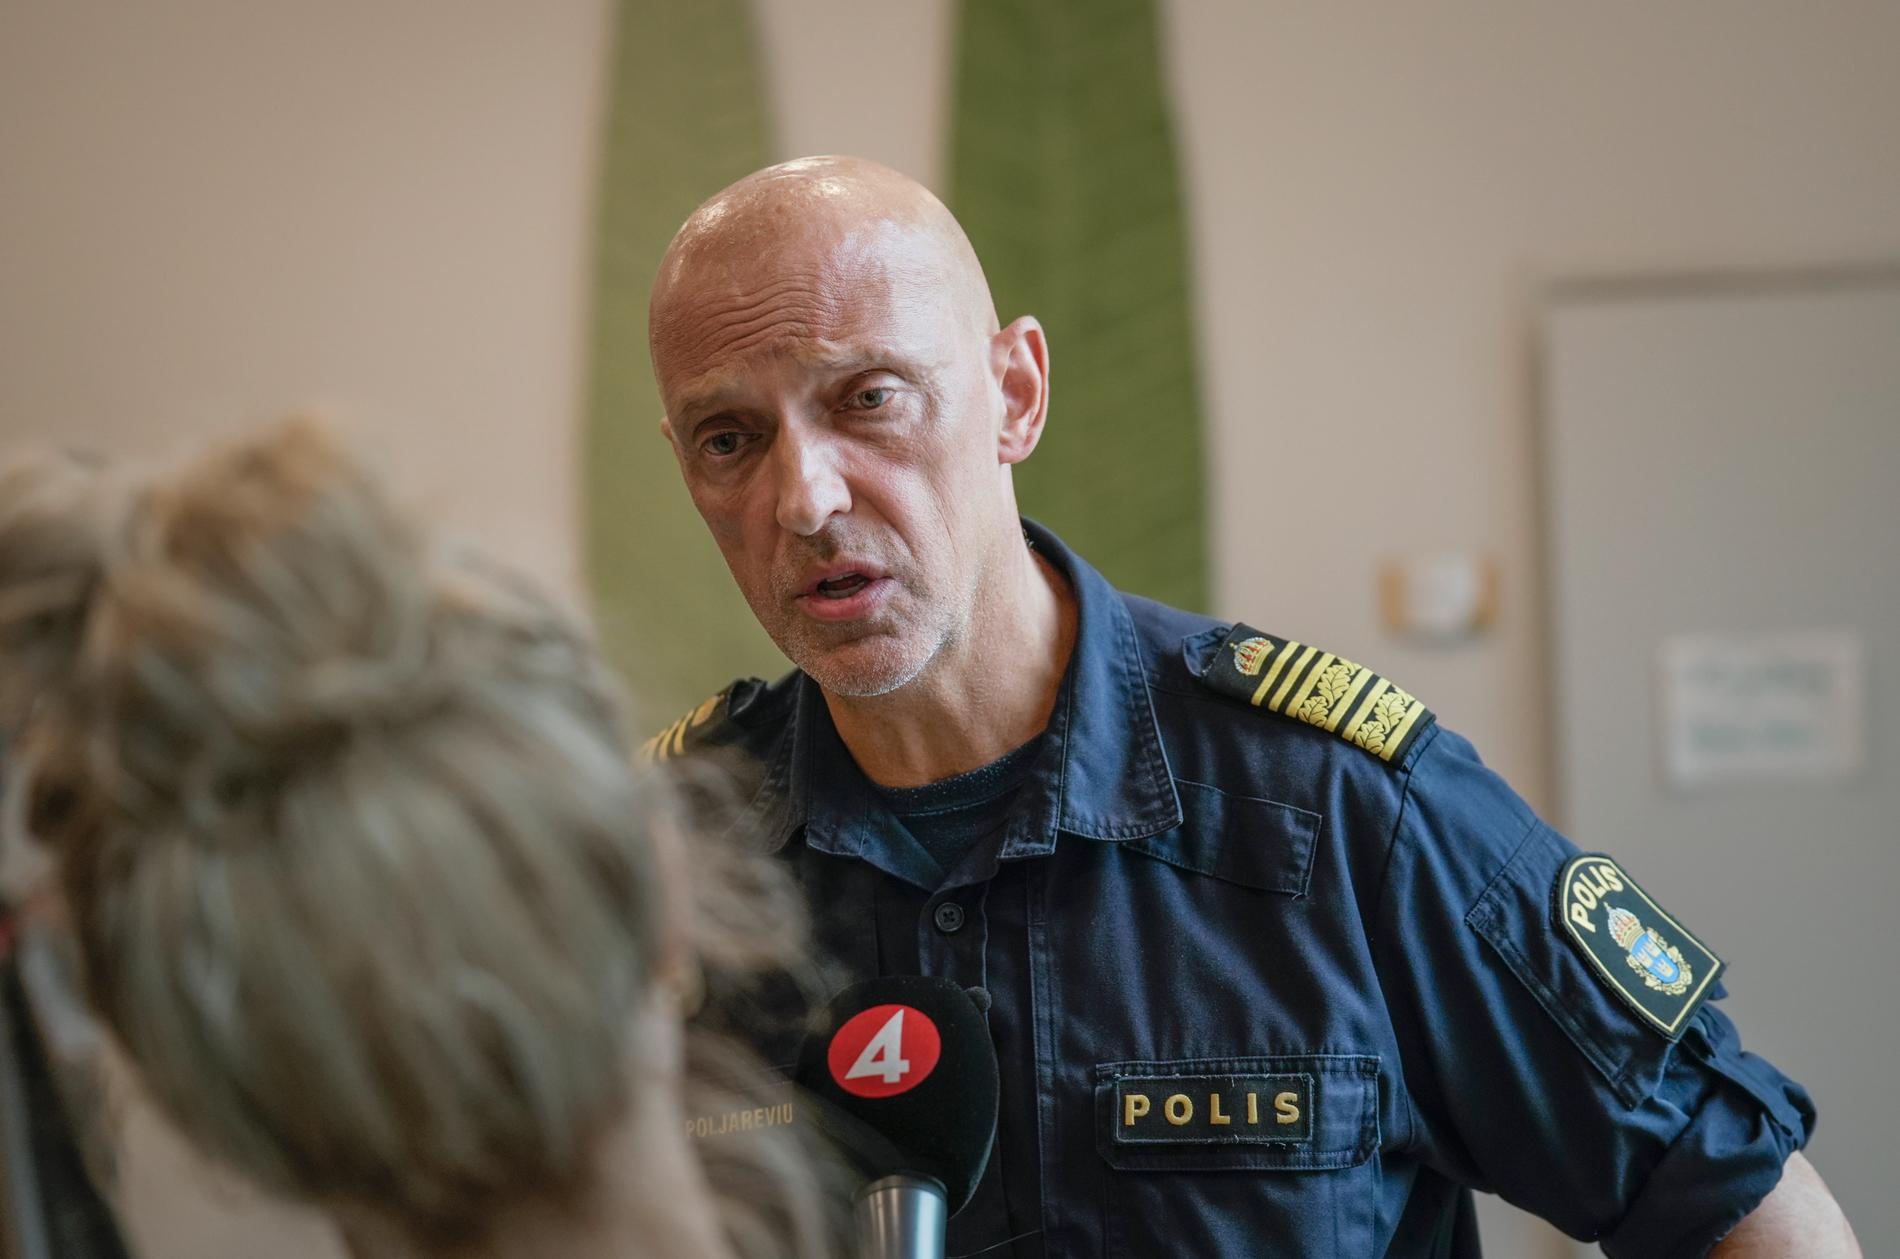 要求严格且非常严重：乌普萨拉警察局长 Jale Poljarevius 是这样描述乌普萨拉和斯德哥尔摩地区目前青少年犯罪状况的。